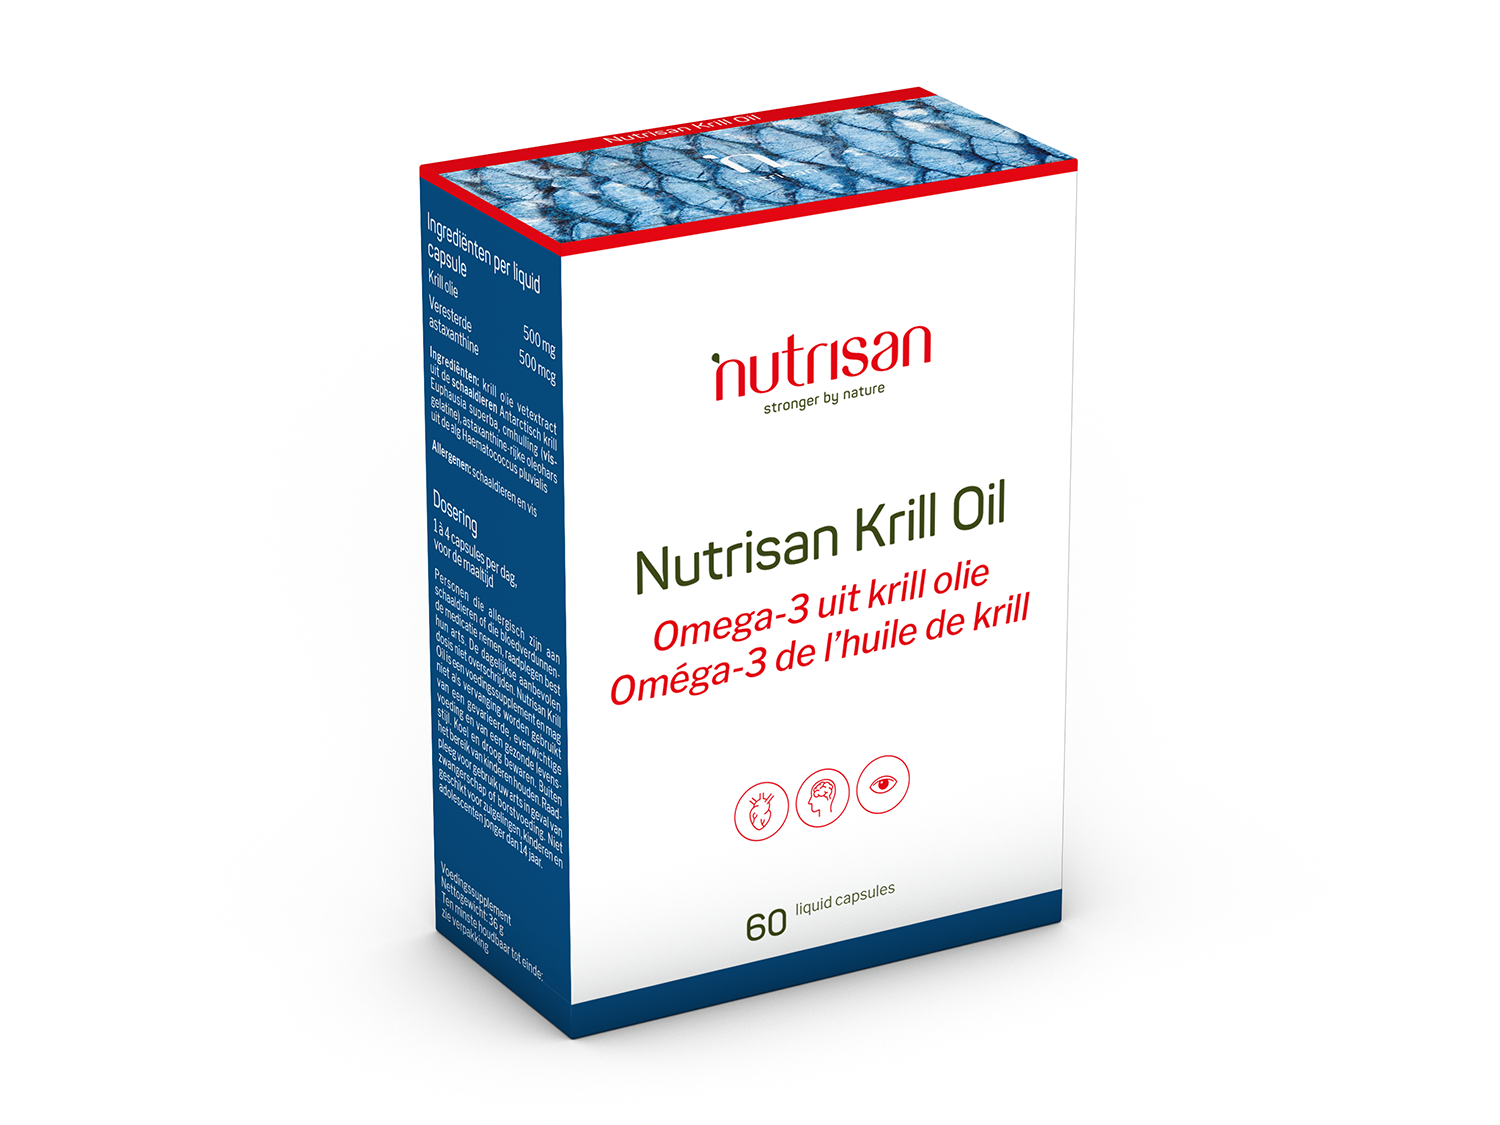 Nutrisan Krill Oil (500mg) - 60 ocean caps